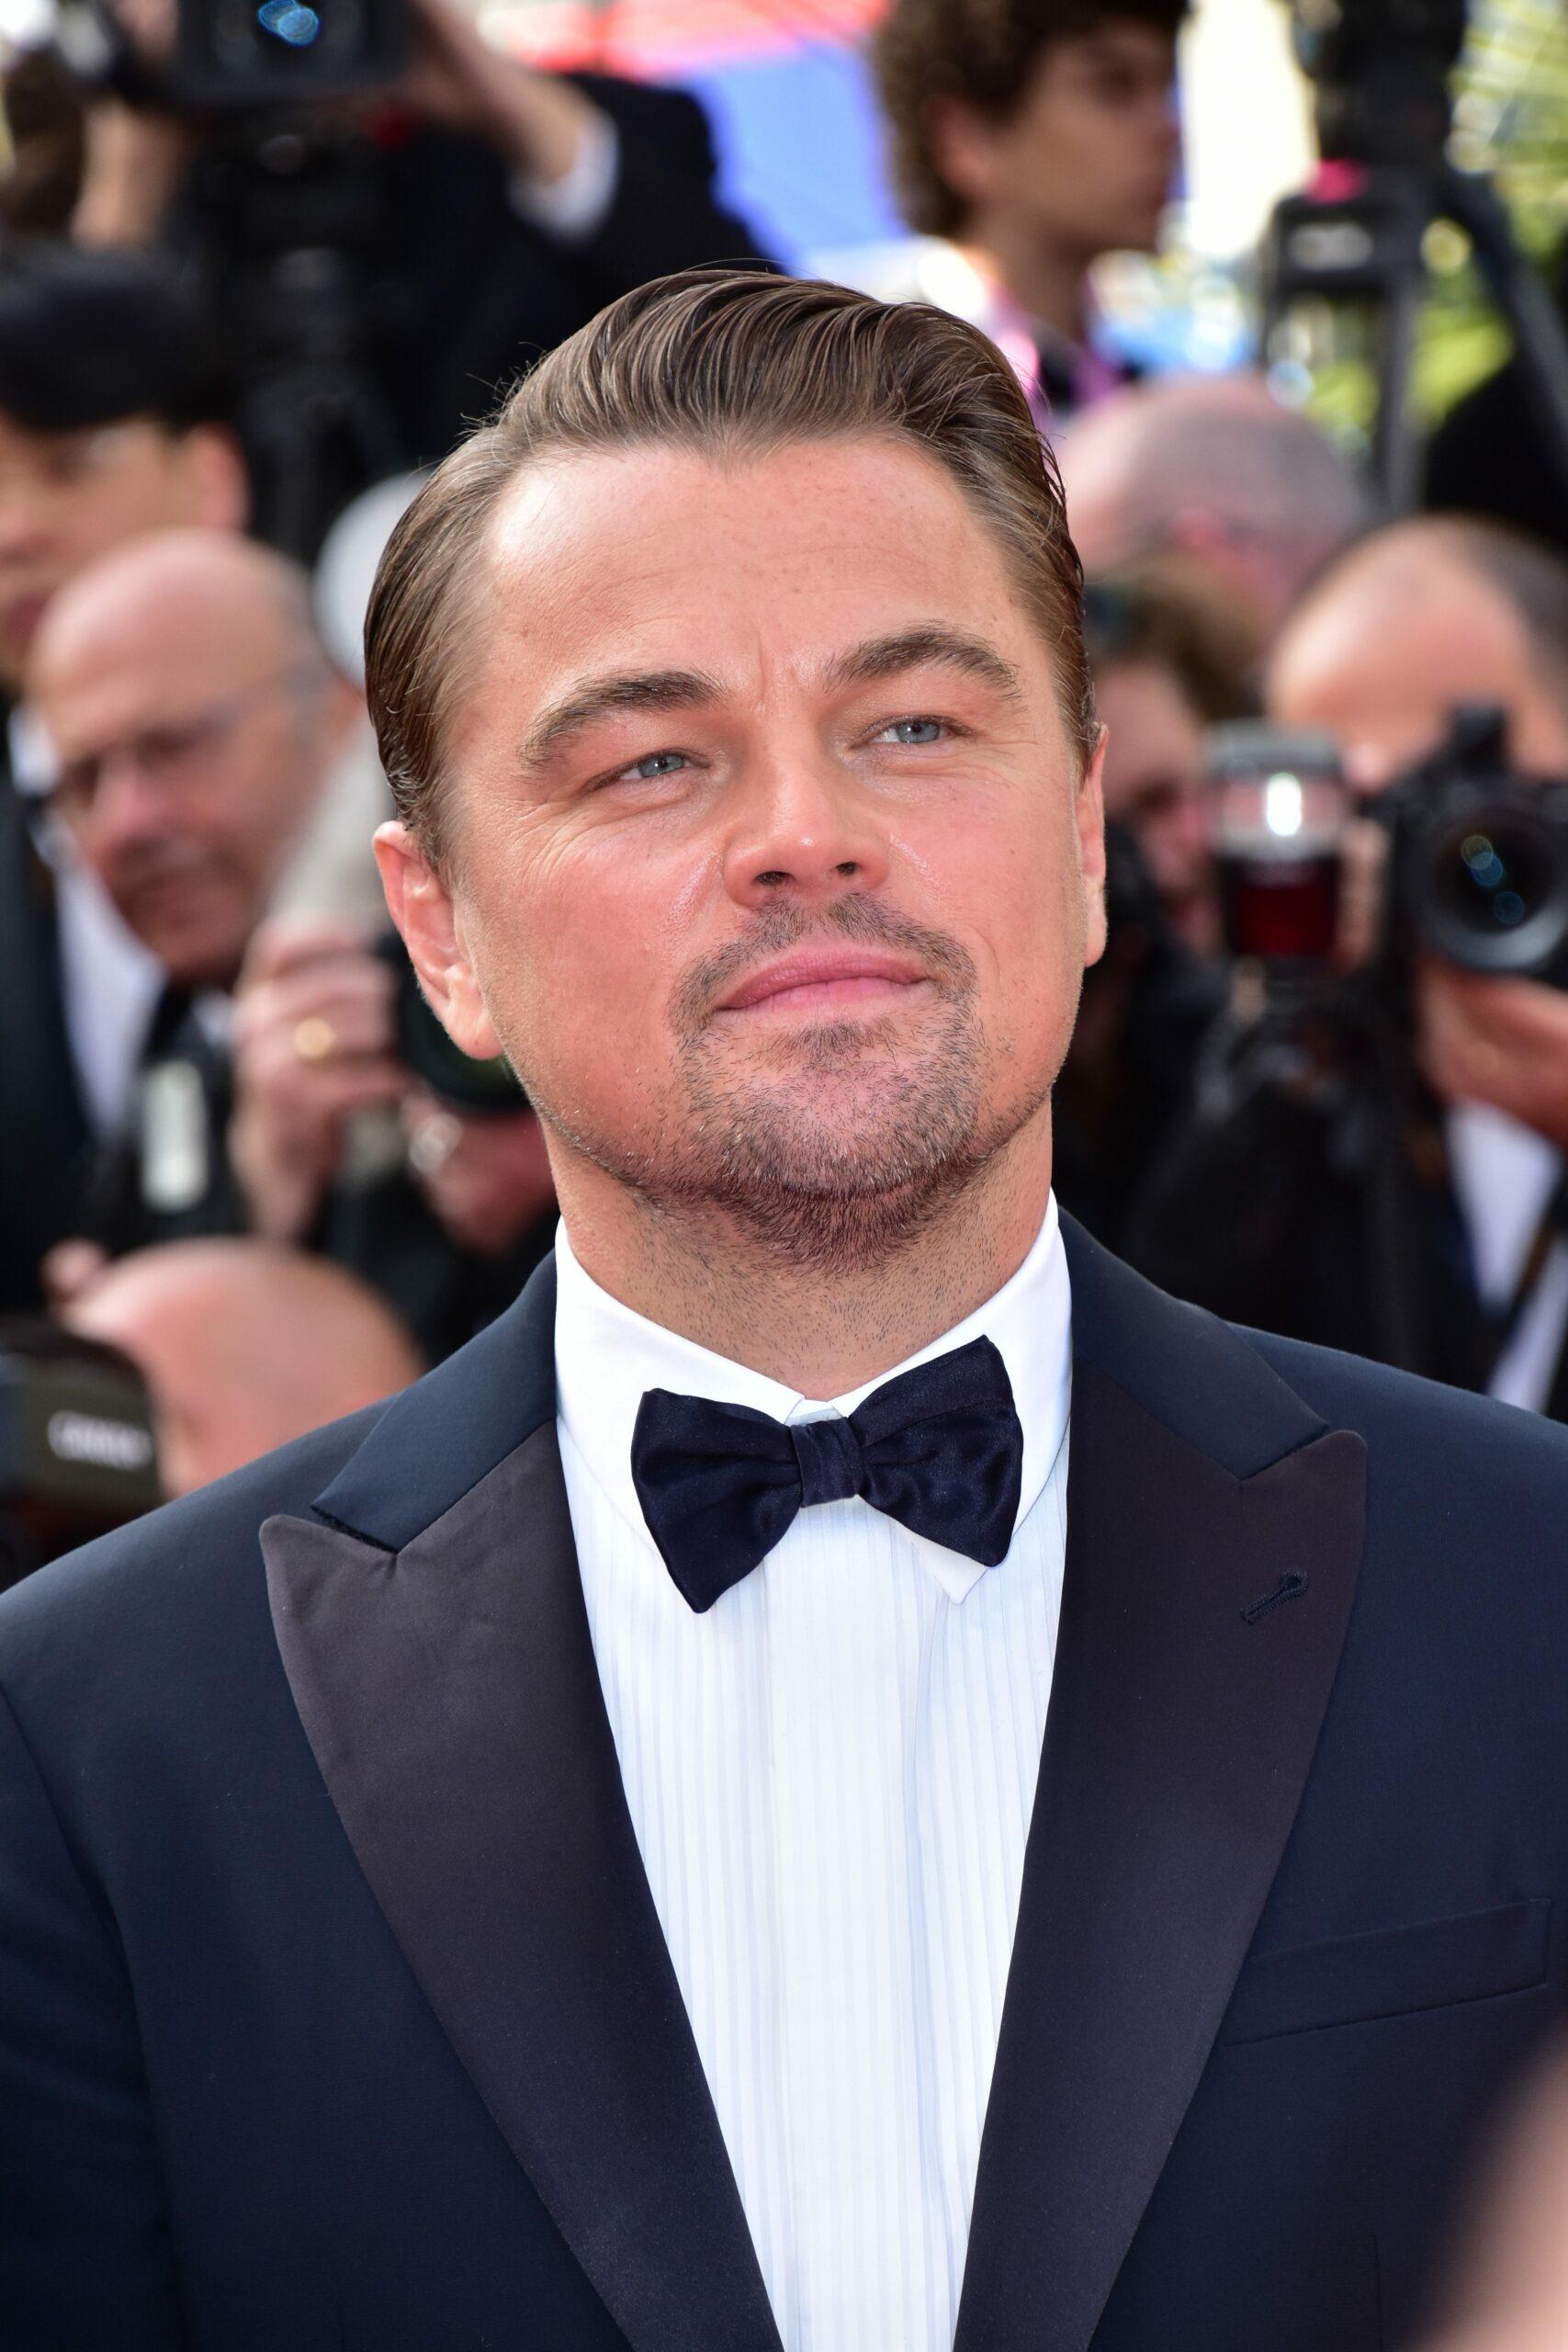 Leo DiCaprio in a tuxedo